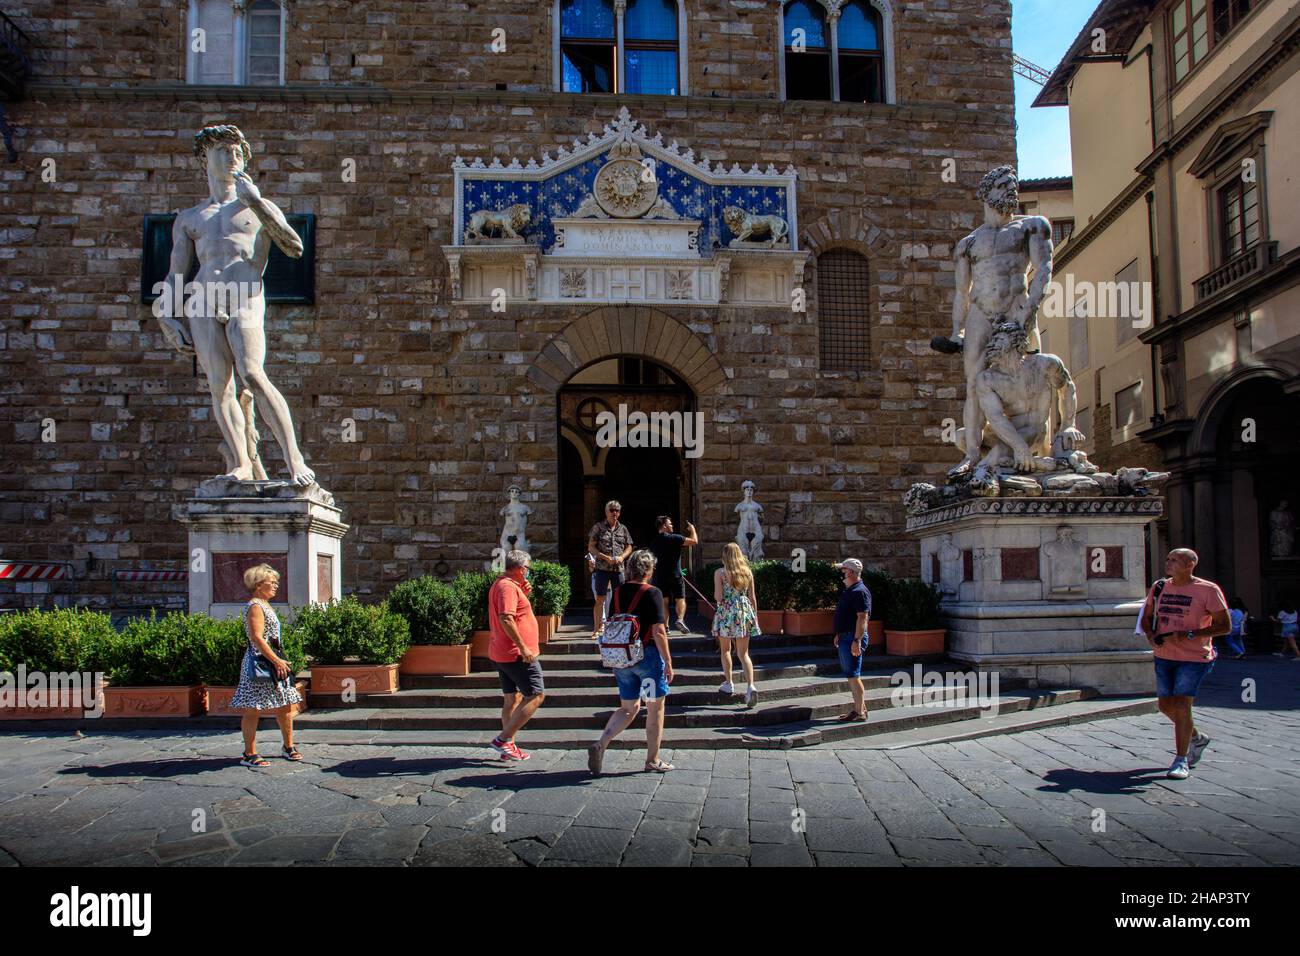 Entrée au musée Palazzo Vecchio présidée par une copie de David de Michel-Ange et une statue d'Hercule et de Cacus.Piazza della Signoria.Florence. Banque D'Images